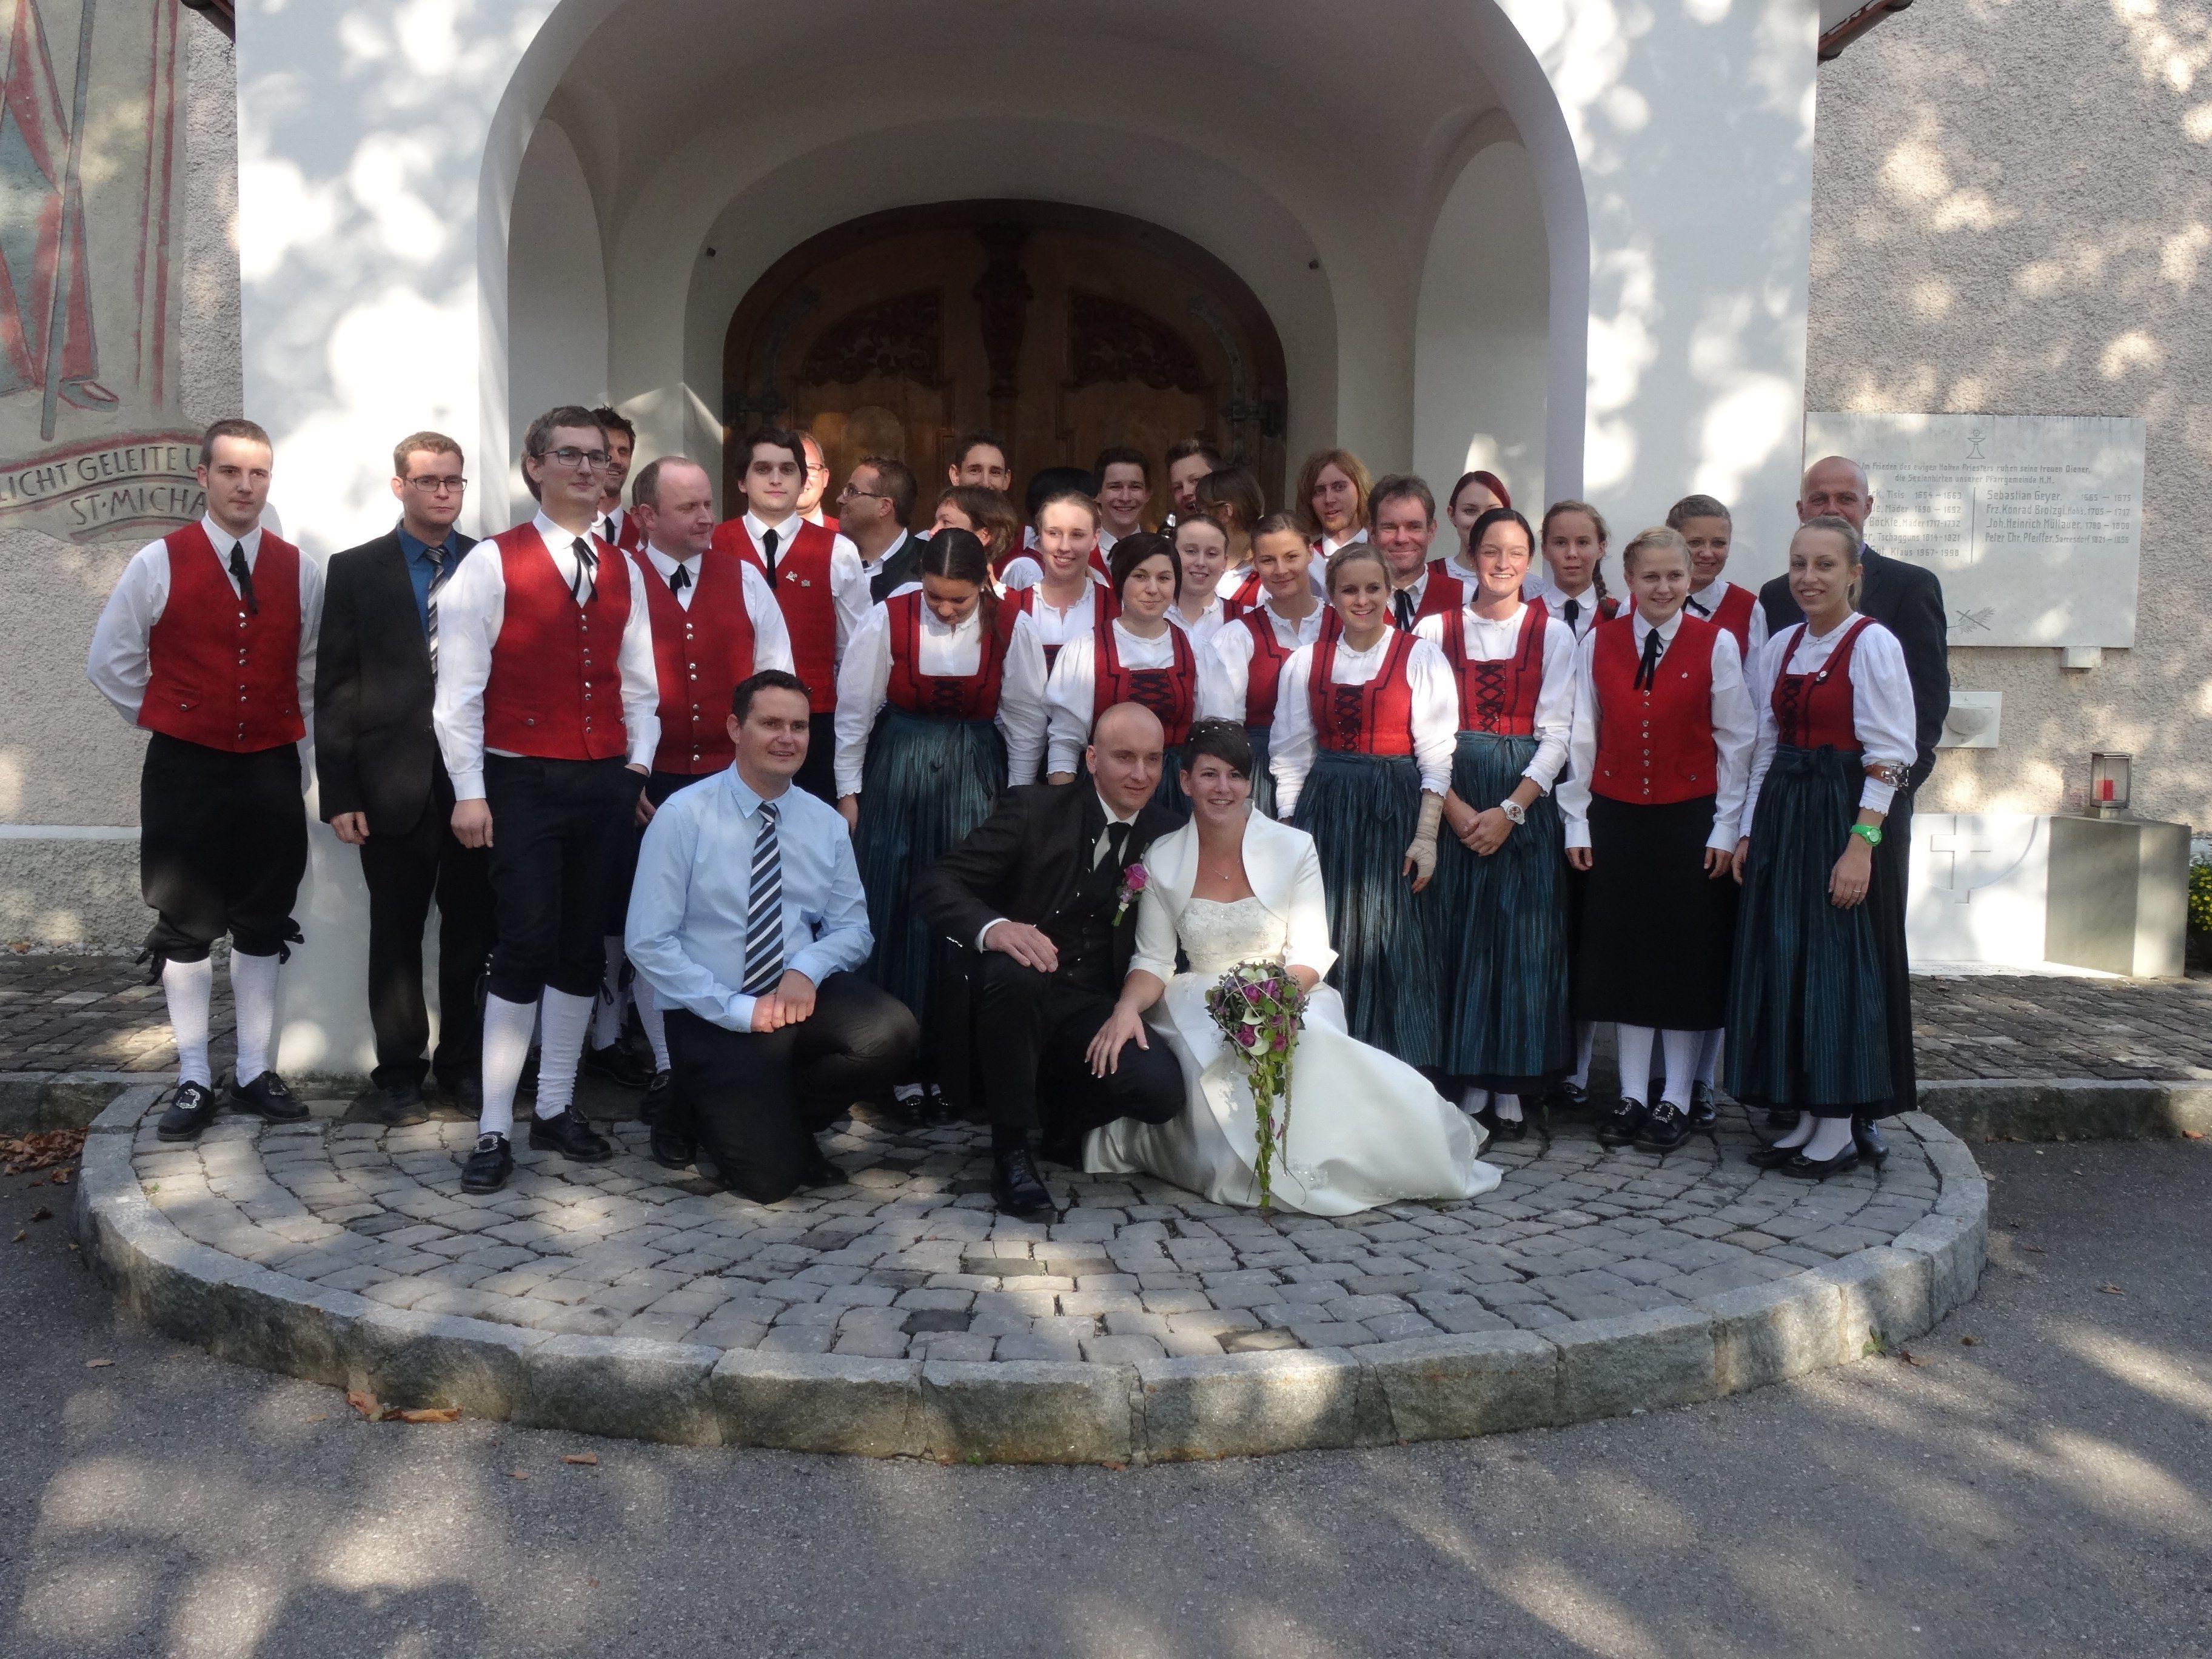 Der Musikverein Harmonie Weiler und das glückliche Brautpaar